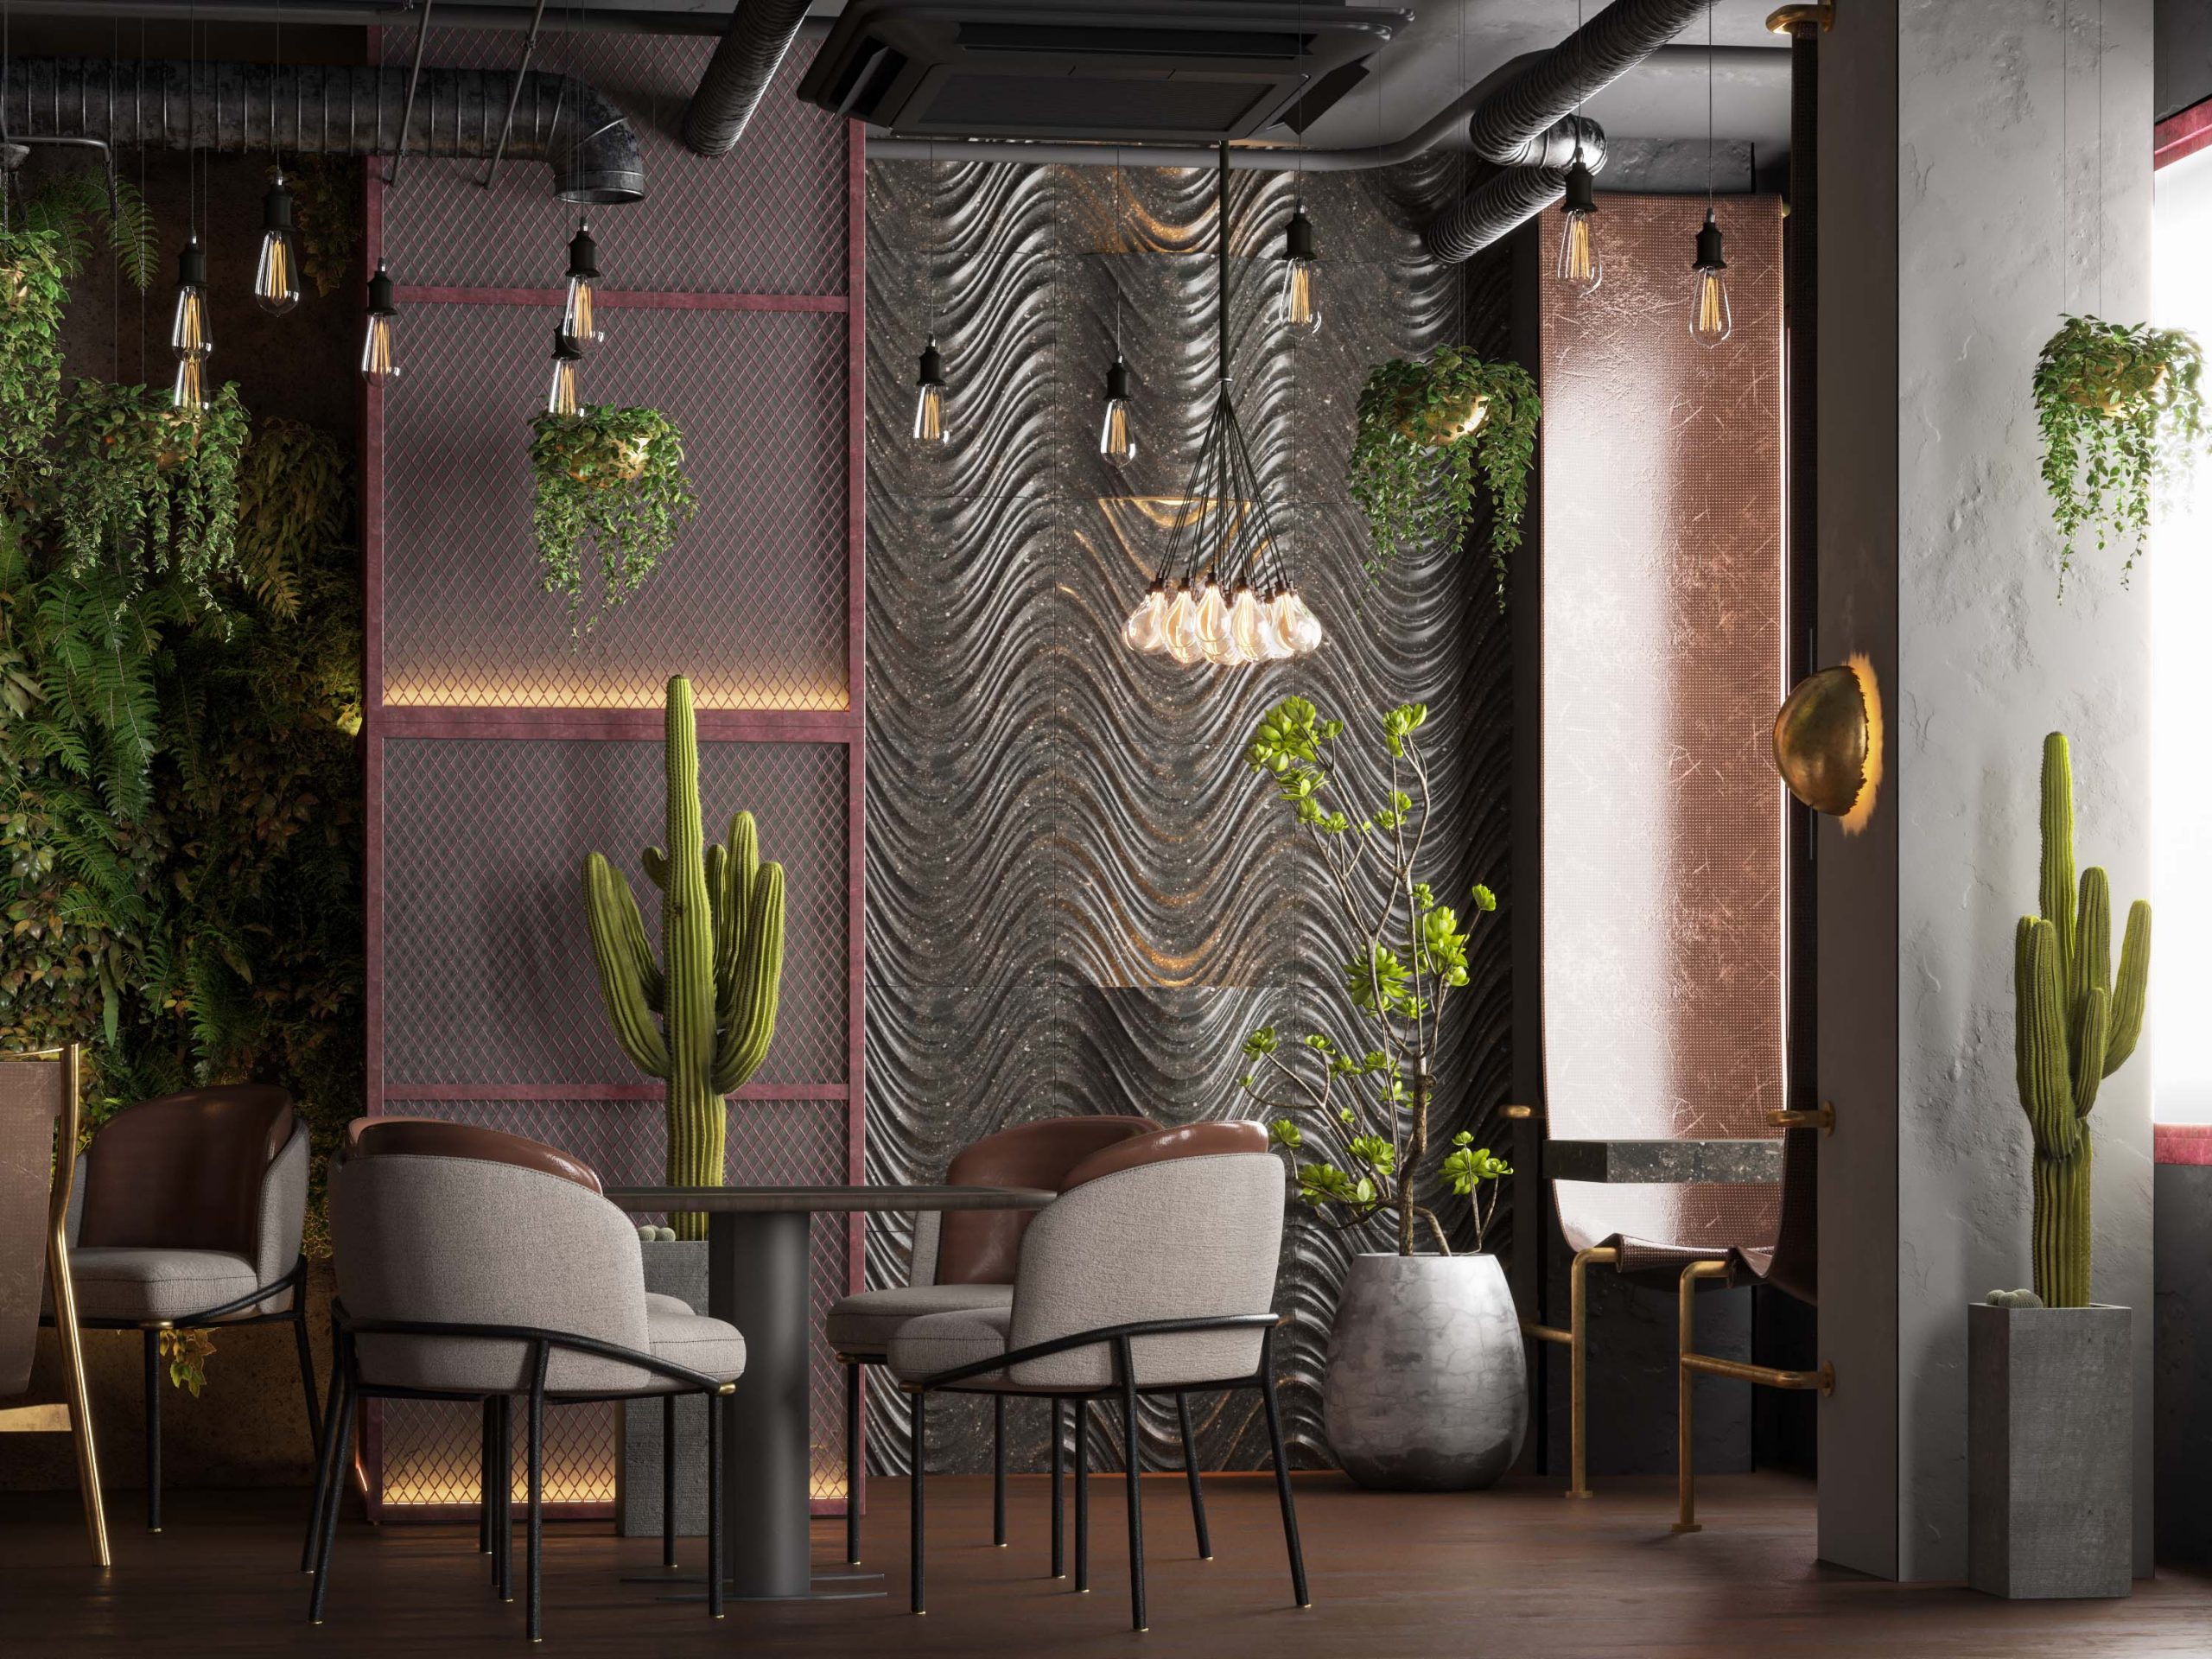 UNIQUE CAFE DESIGN - plants - sun light - chair design 